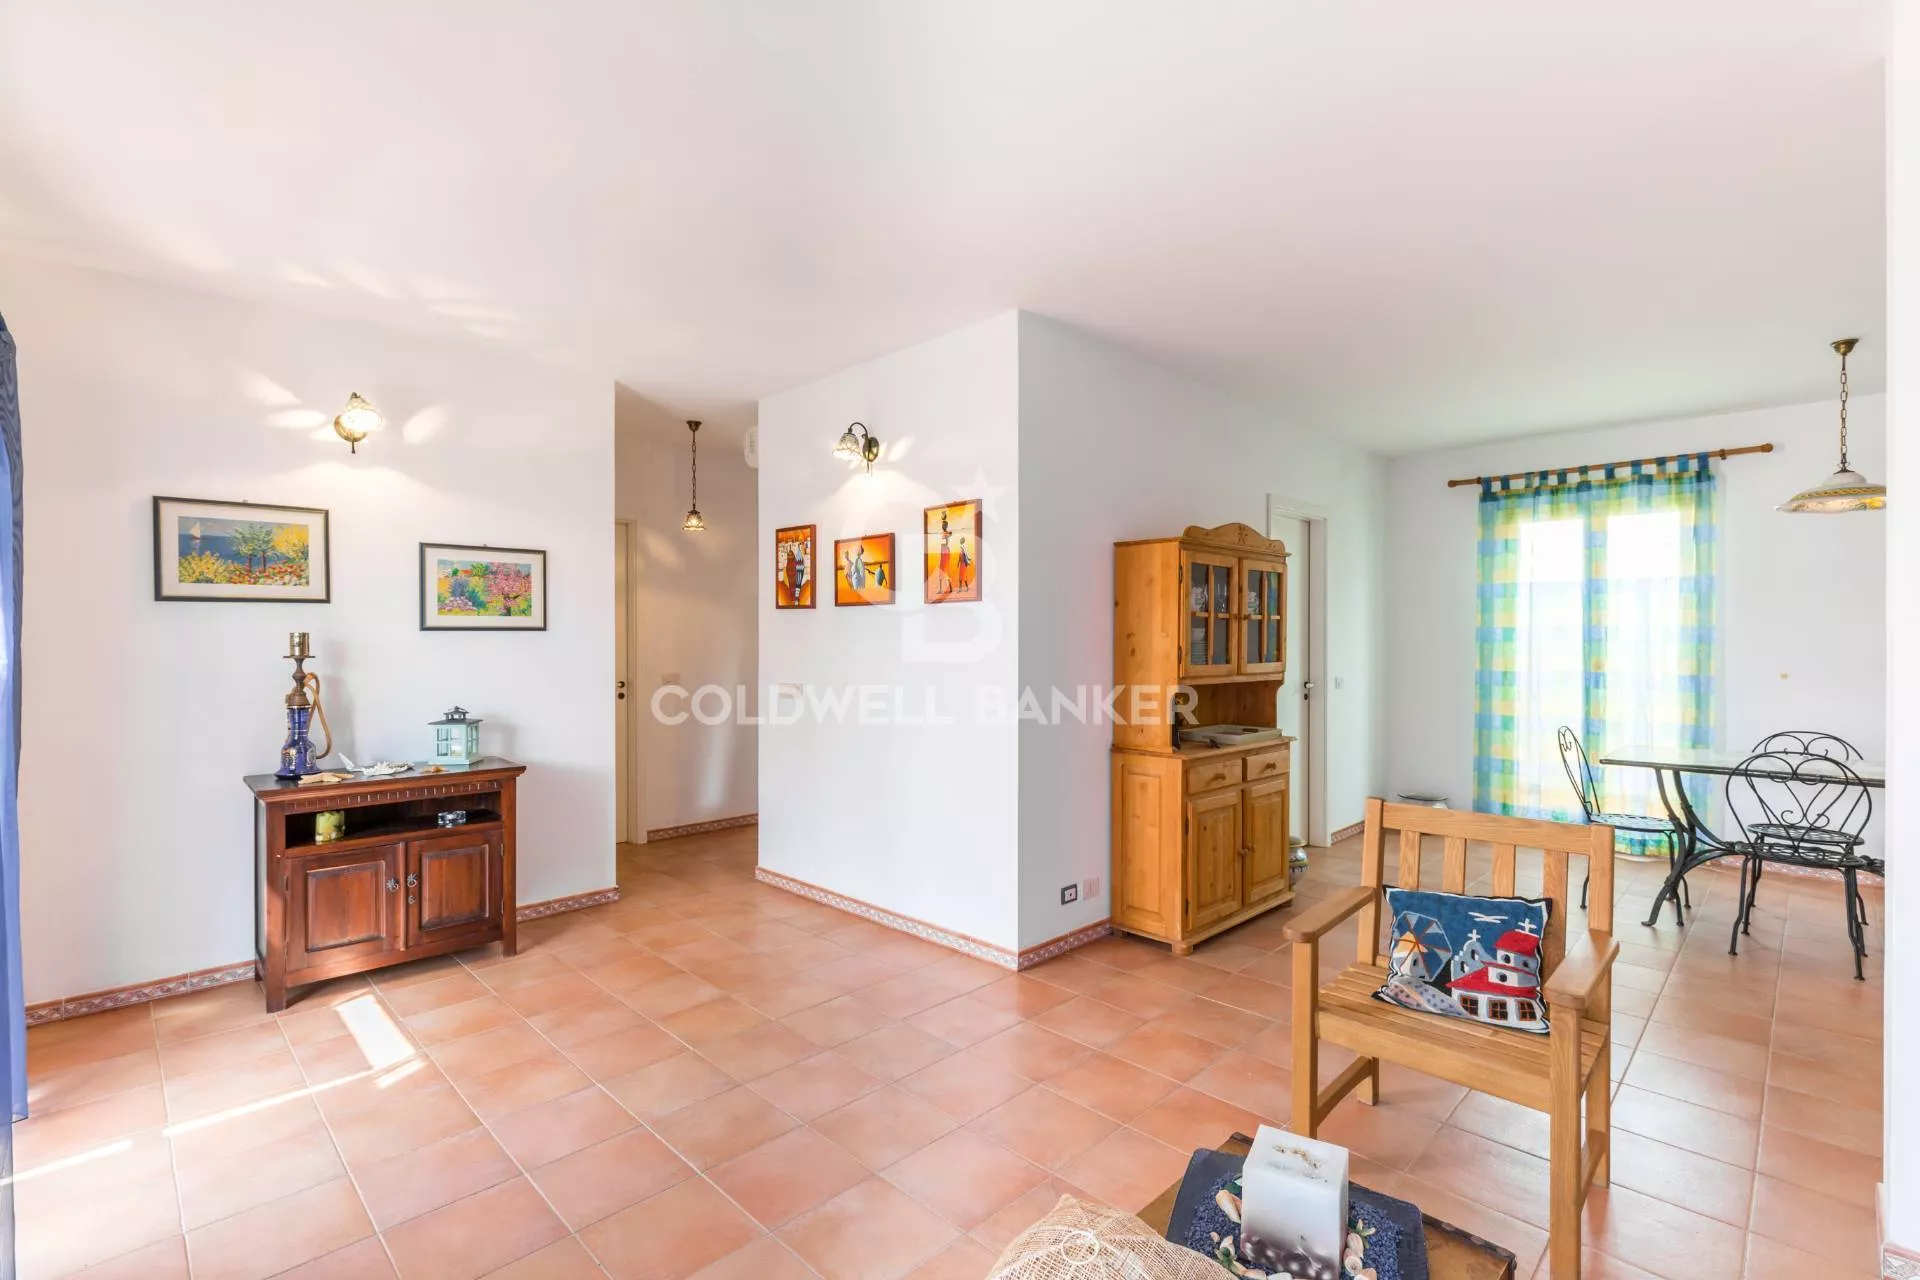 Immagine per Appartamento in vendita a Santa Croce Camerina Via Fratelli Vivaldi